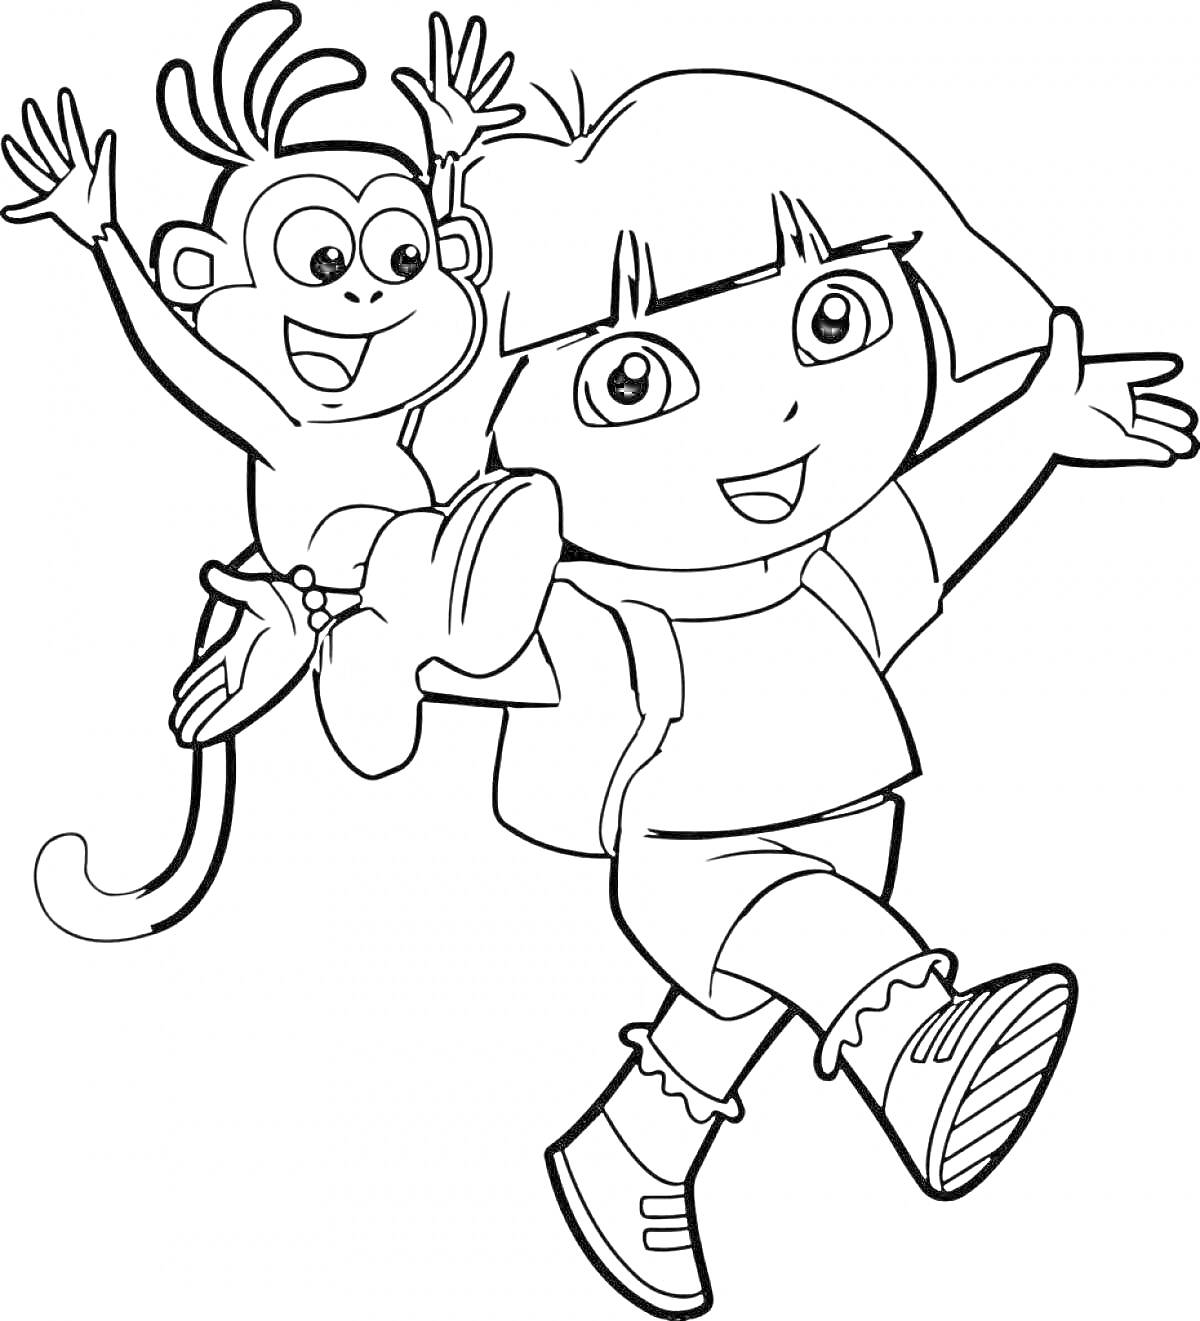 Раскраска Даша, обезьянка, рюкзак, ботинки, короткие волосы, анимационный персонаж